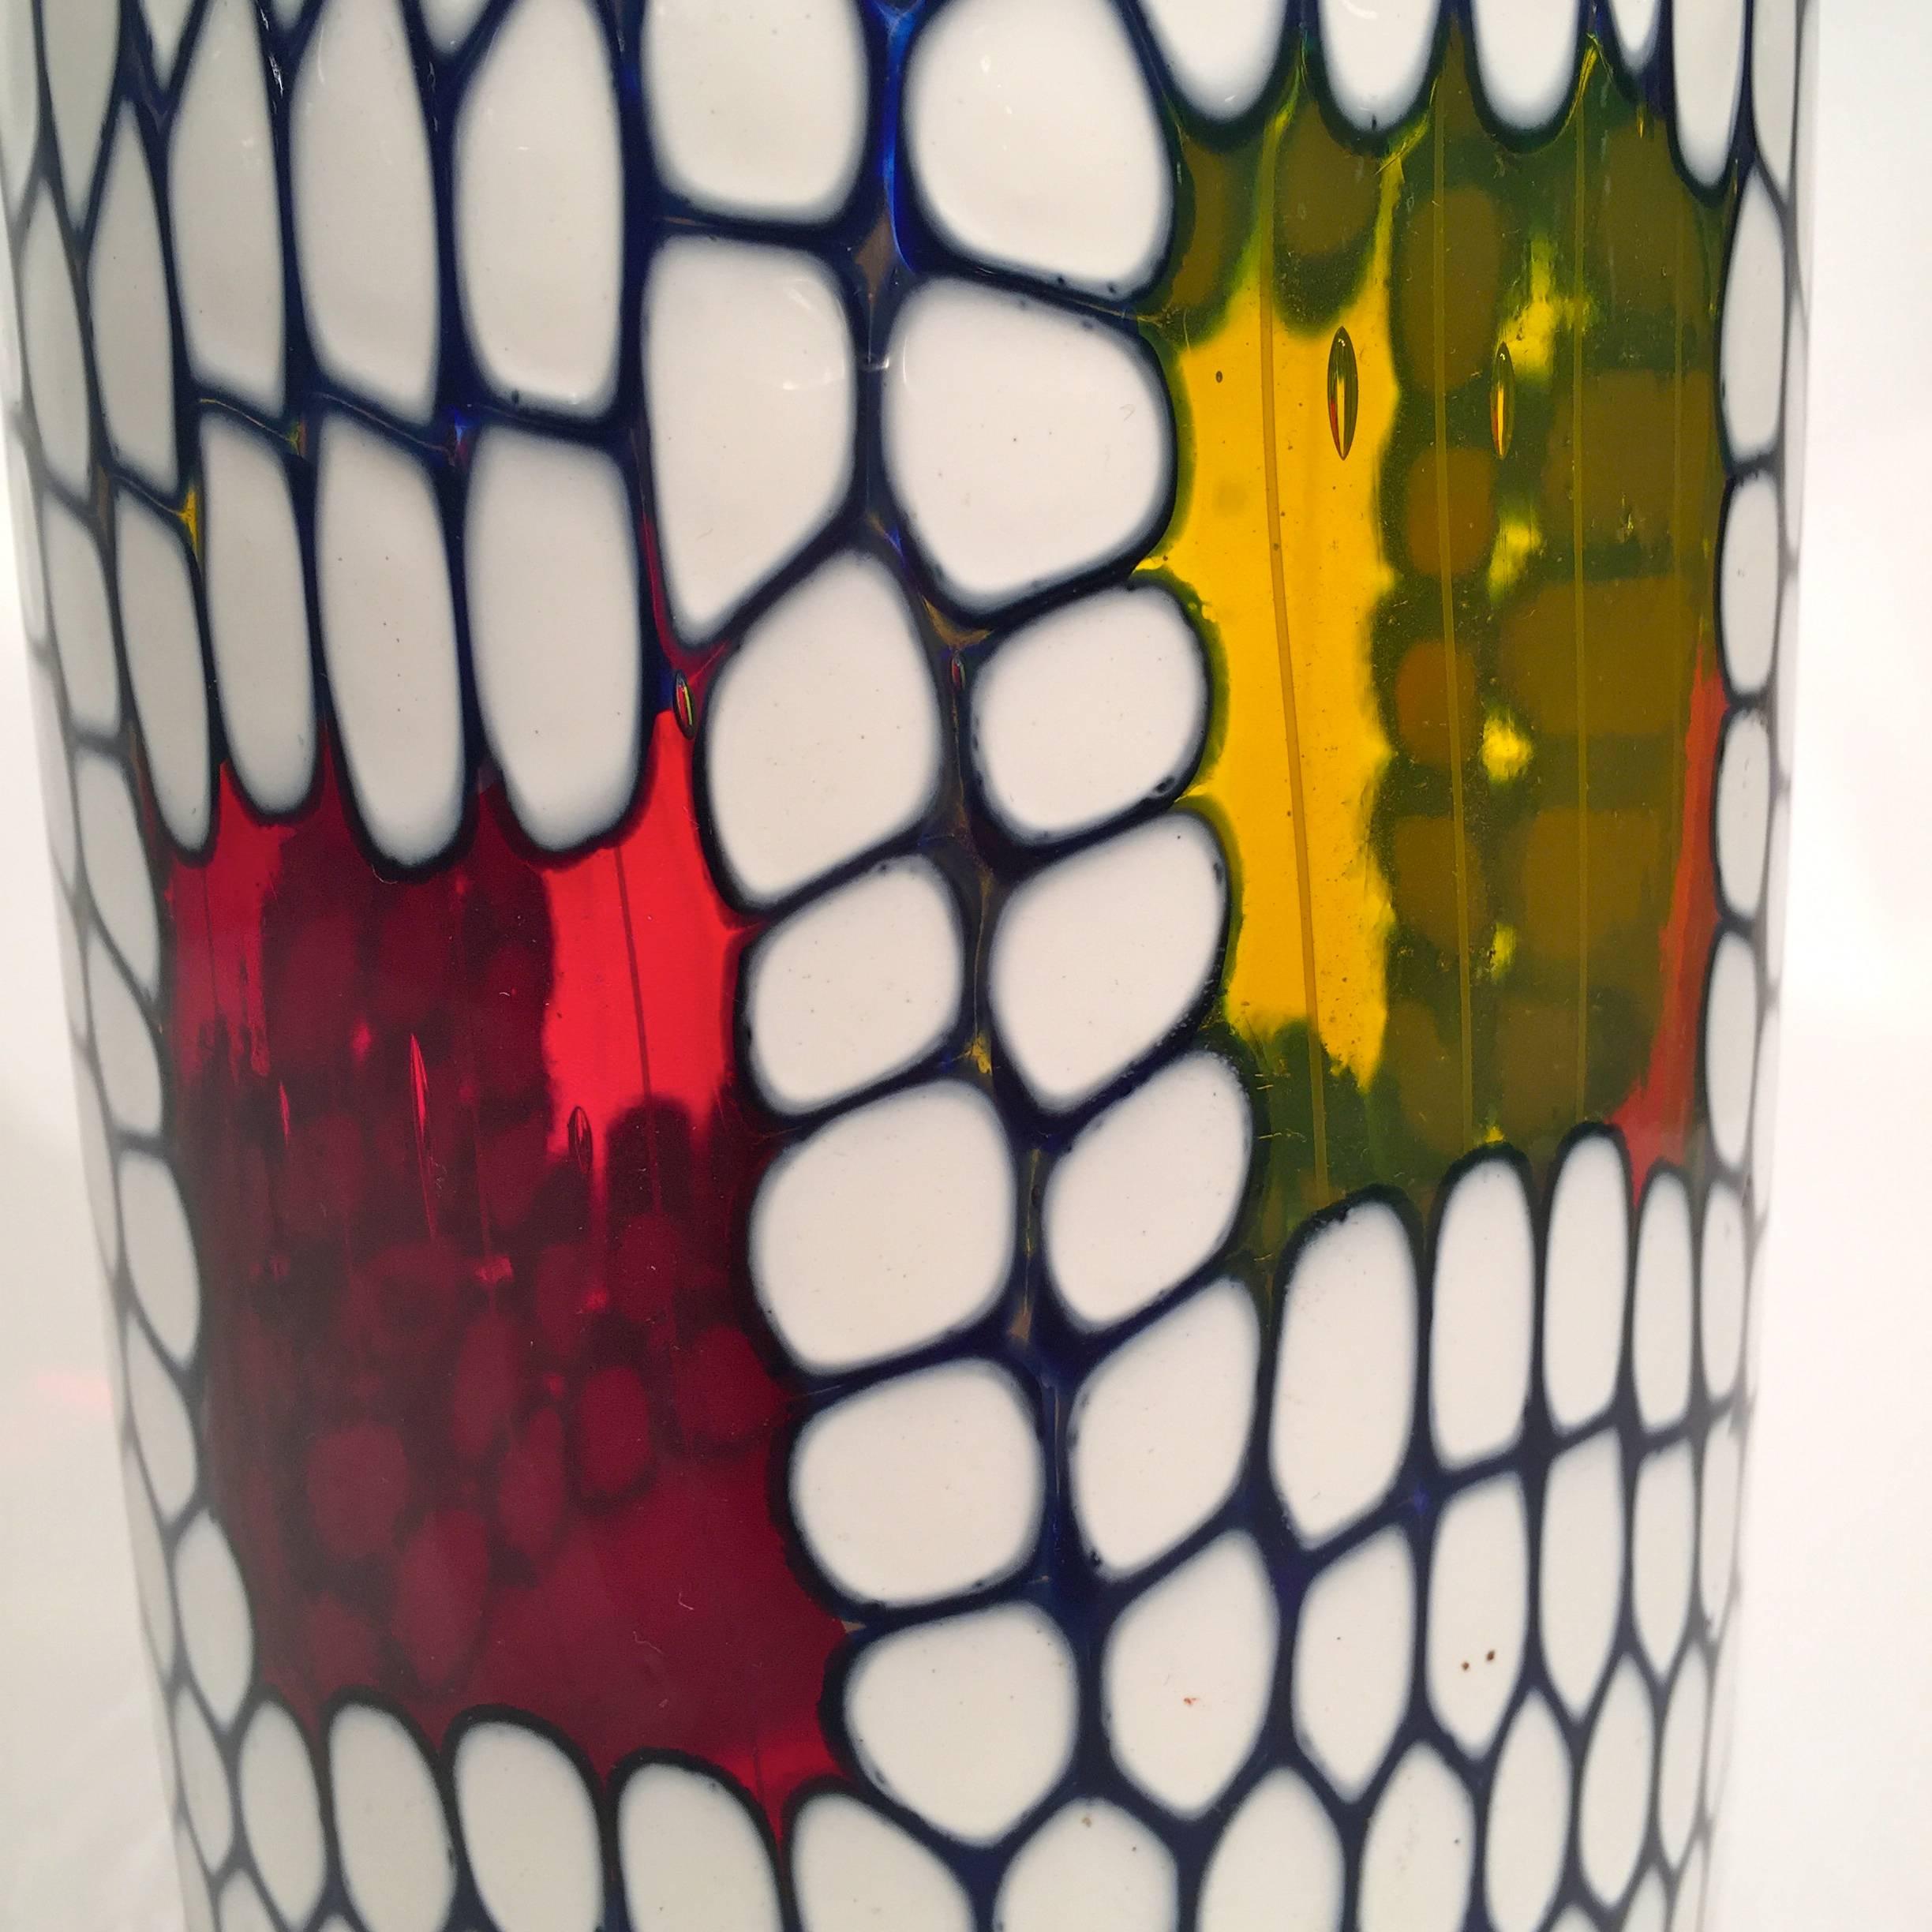 Ansolo Fuga for AVEM Murano glass multi-color vase, circa 1950.